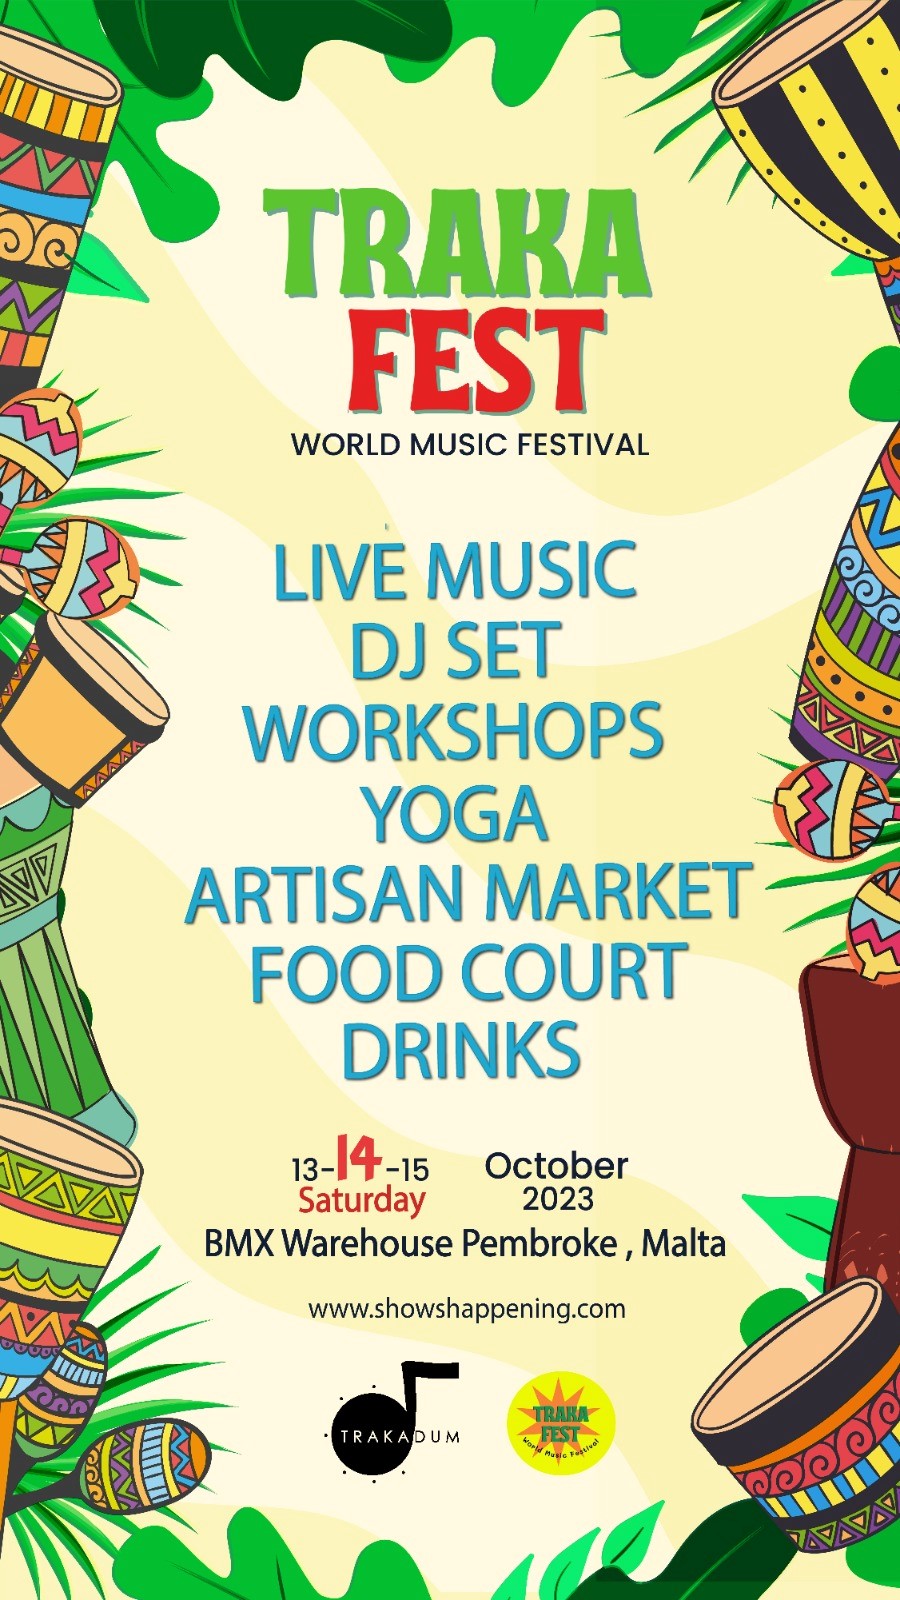 Trakafest World Music Festival poster